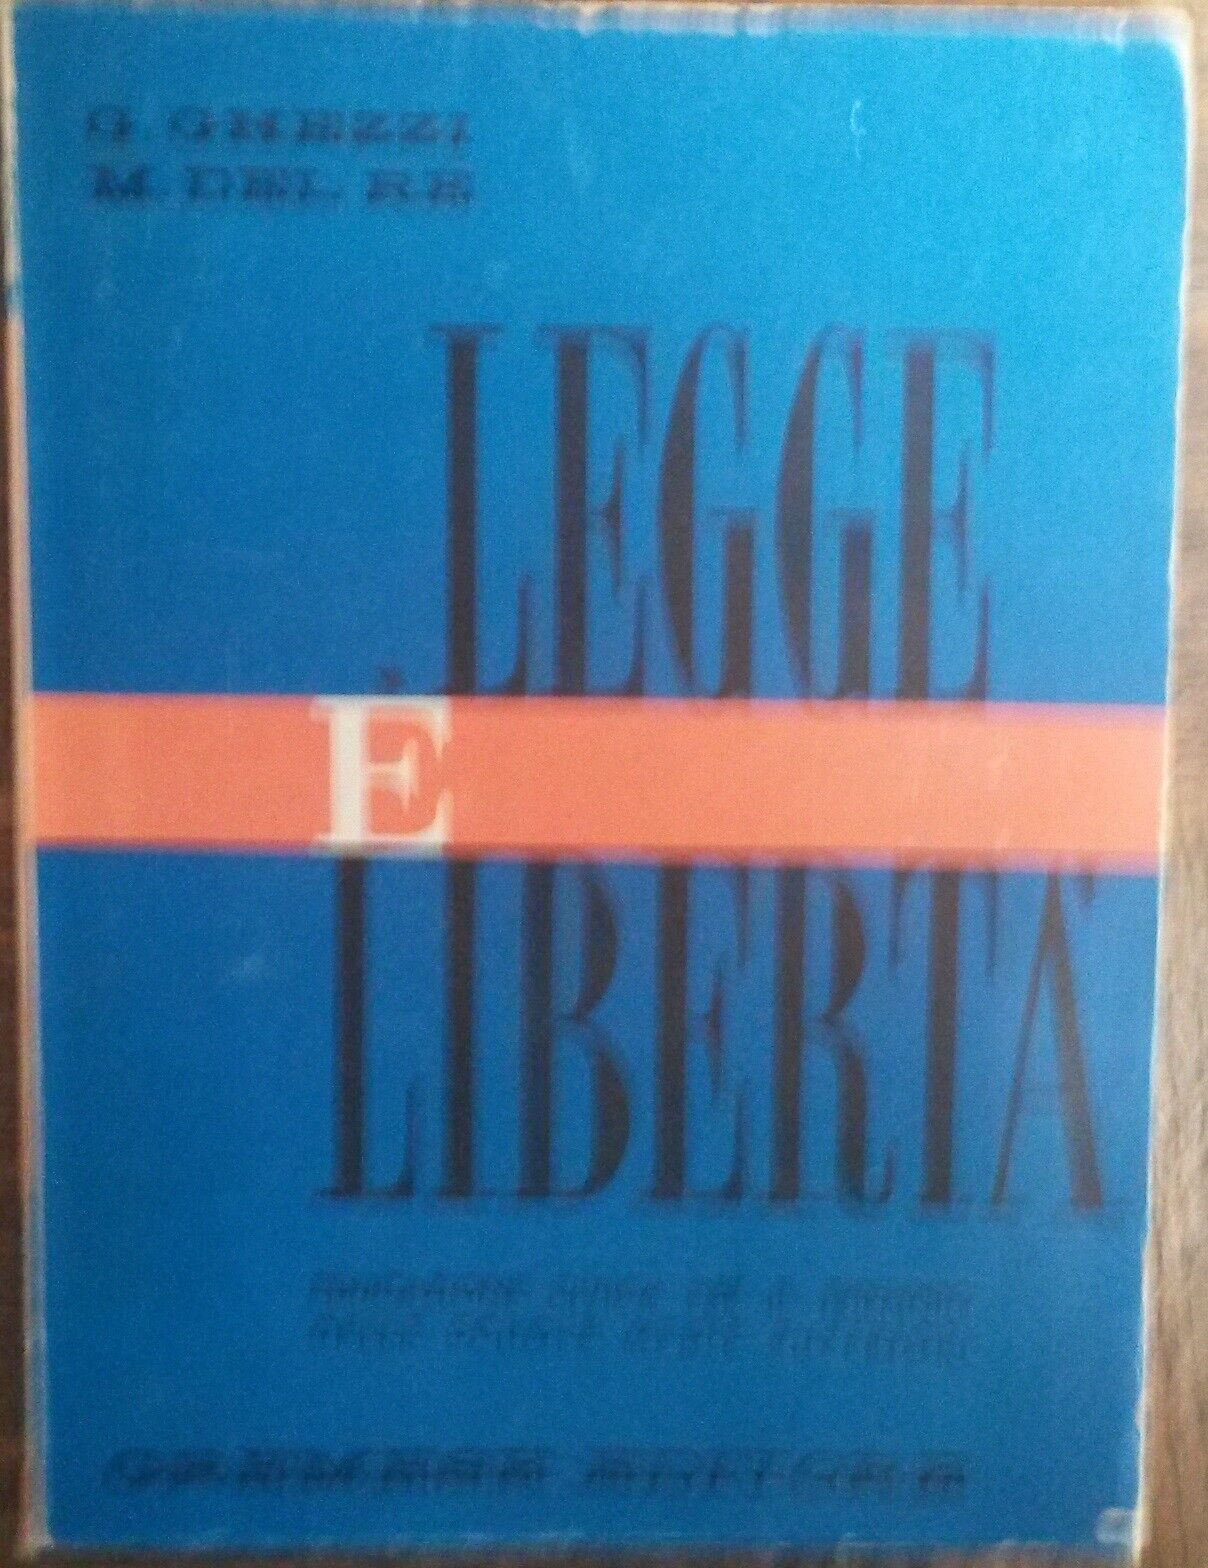 Legge ? libert? - G. Ghezzi, M. Del Re - Gremese Editore,1967 - R